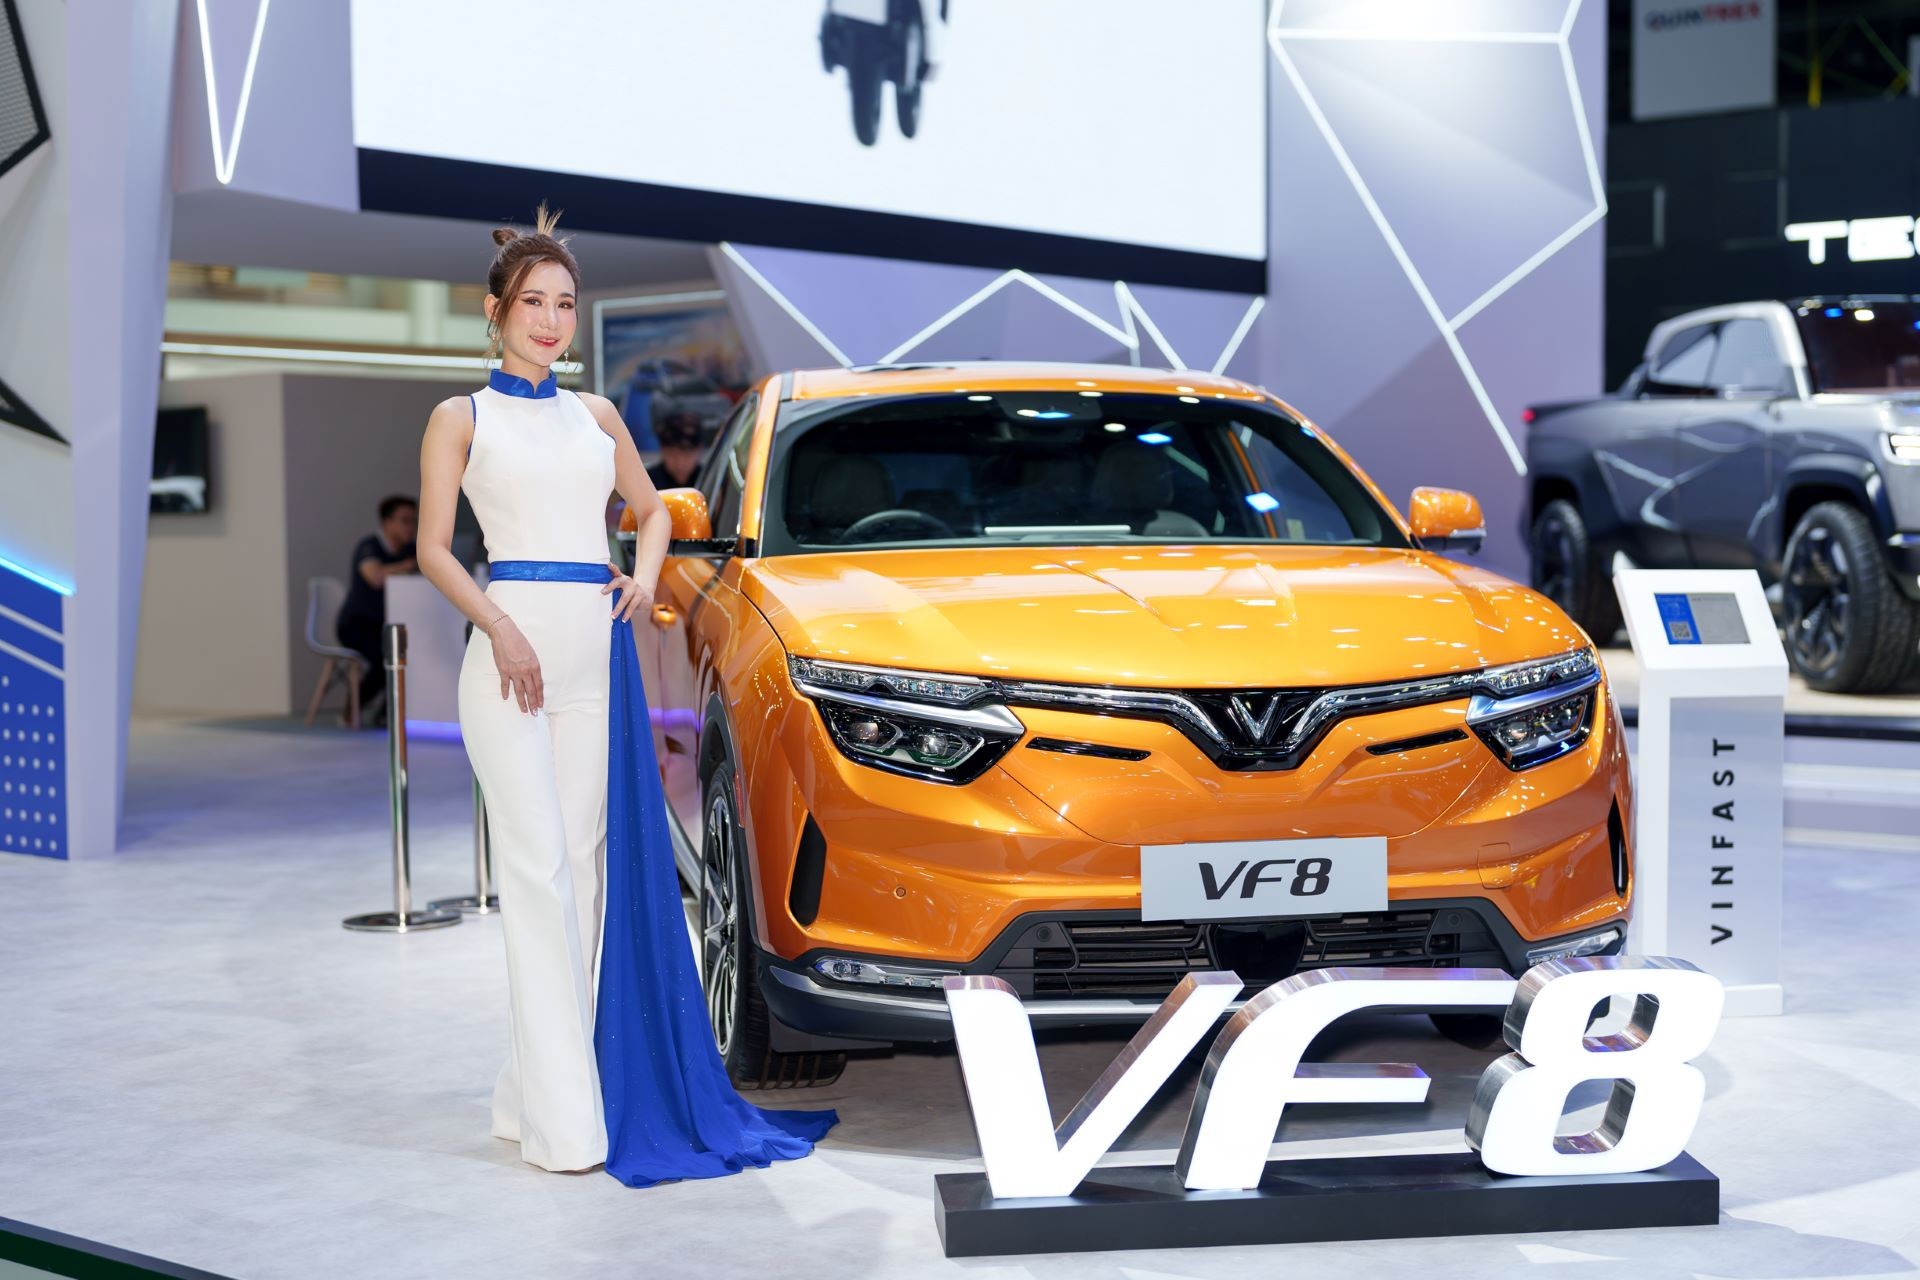 Mẫu D-SUV VF 8 từng được trưng bày tại rất nhiều triển lãm ô tô quốc tế lớn trên thế giới.